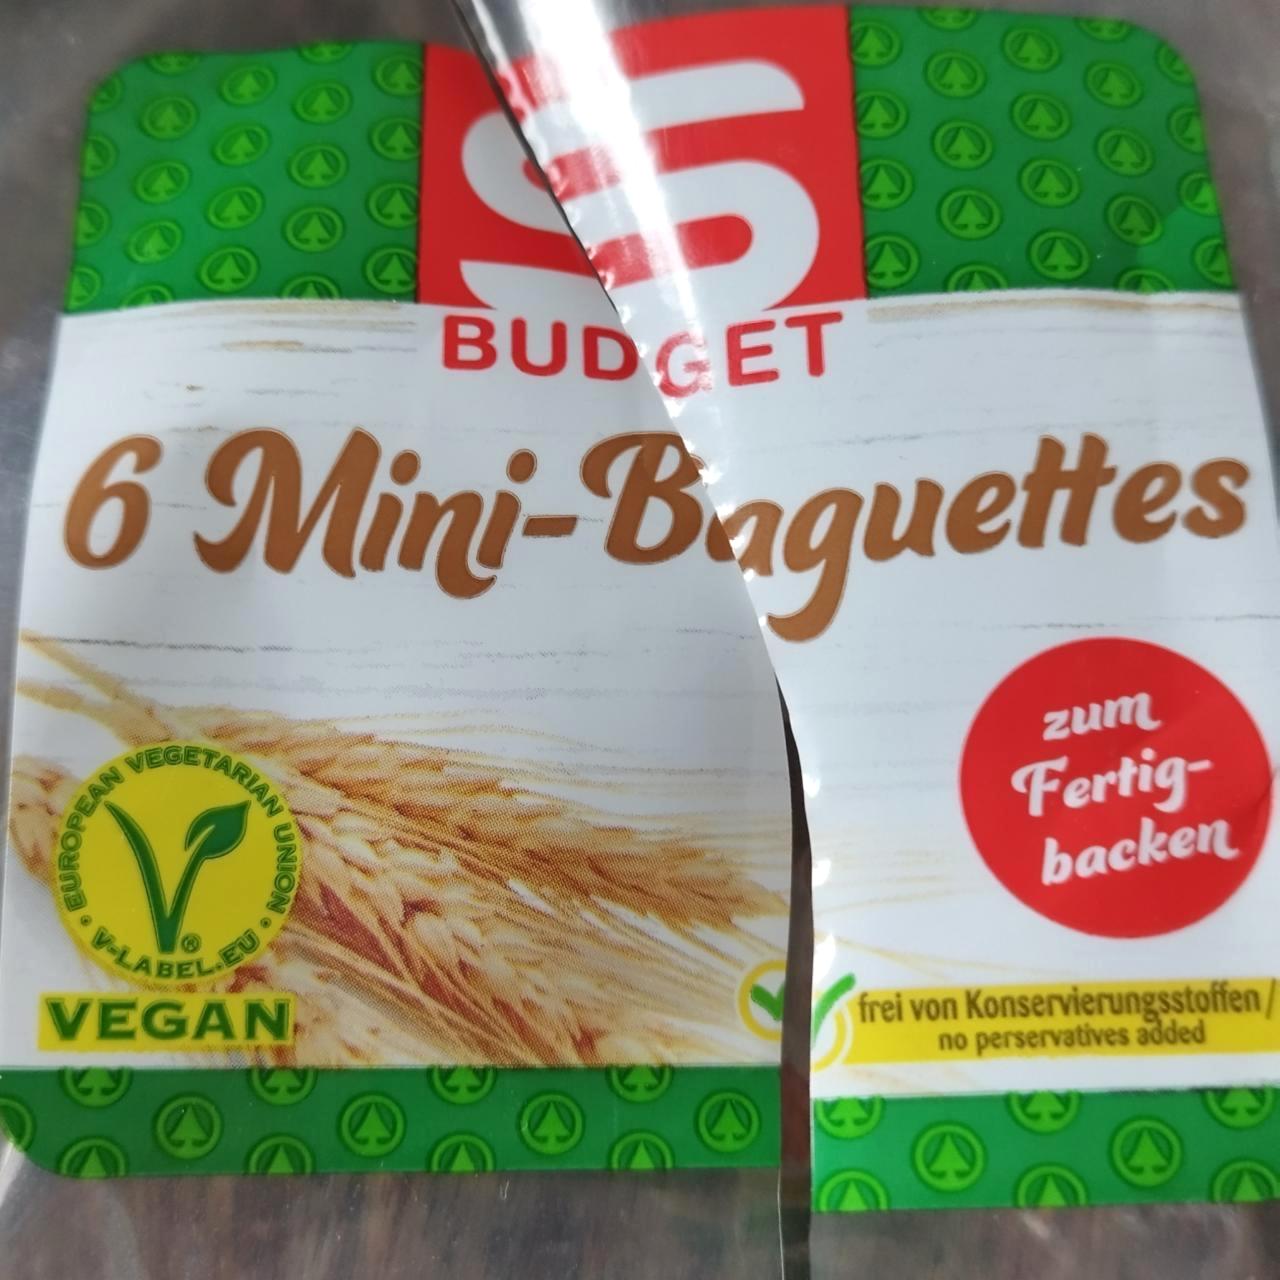 Képek - 6 Mini Baguettes S Budget